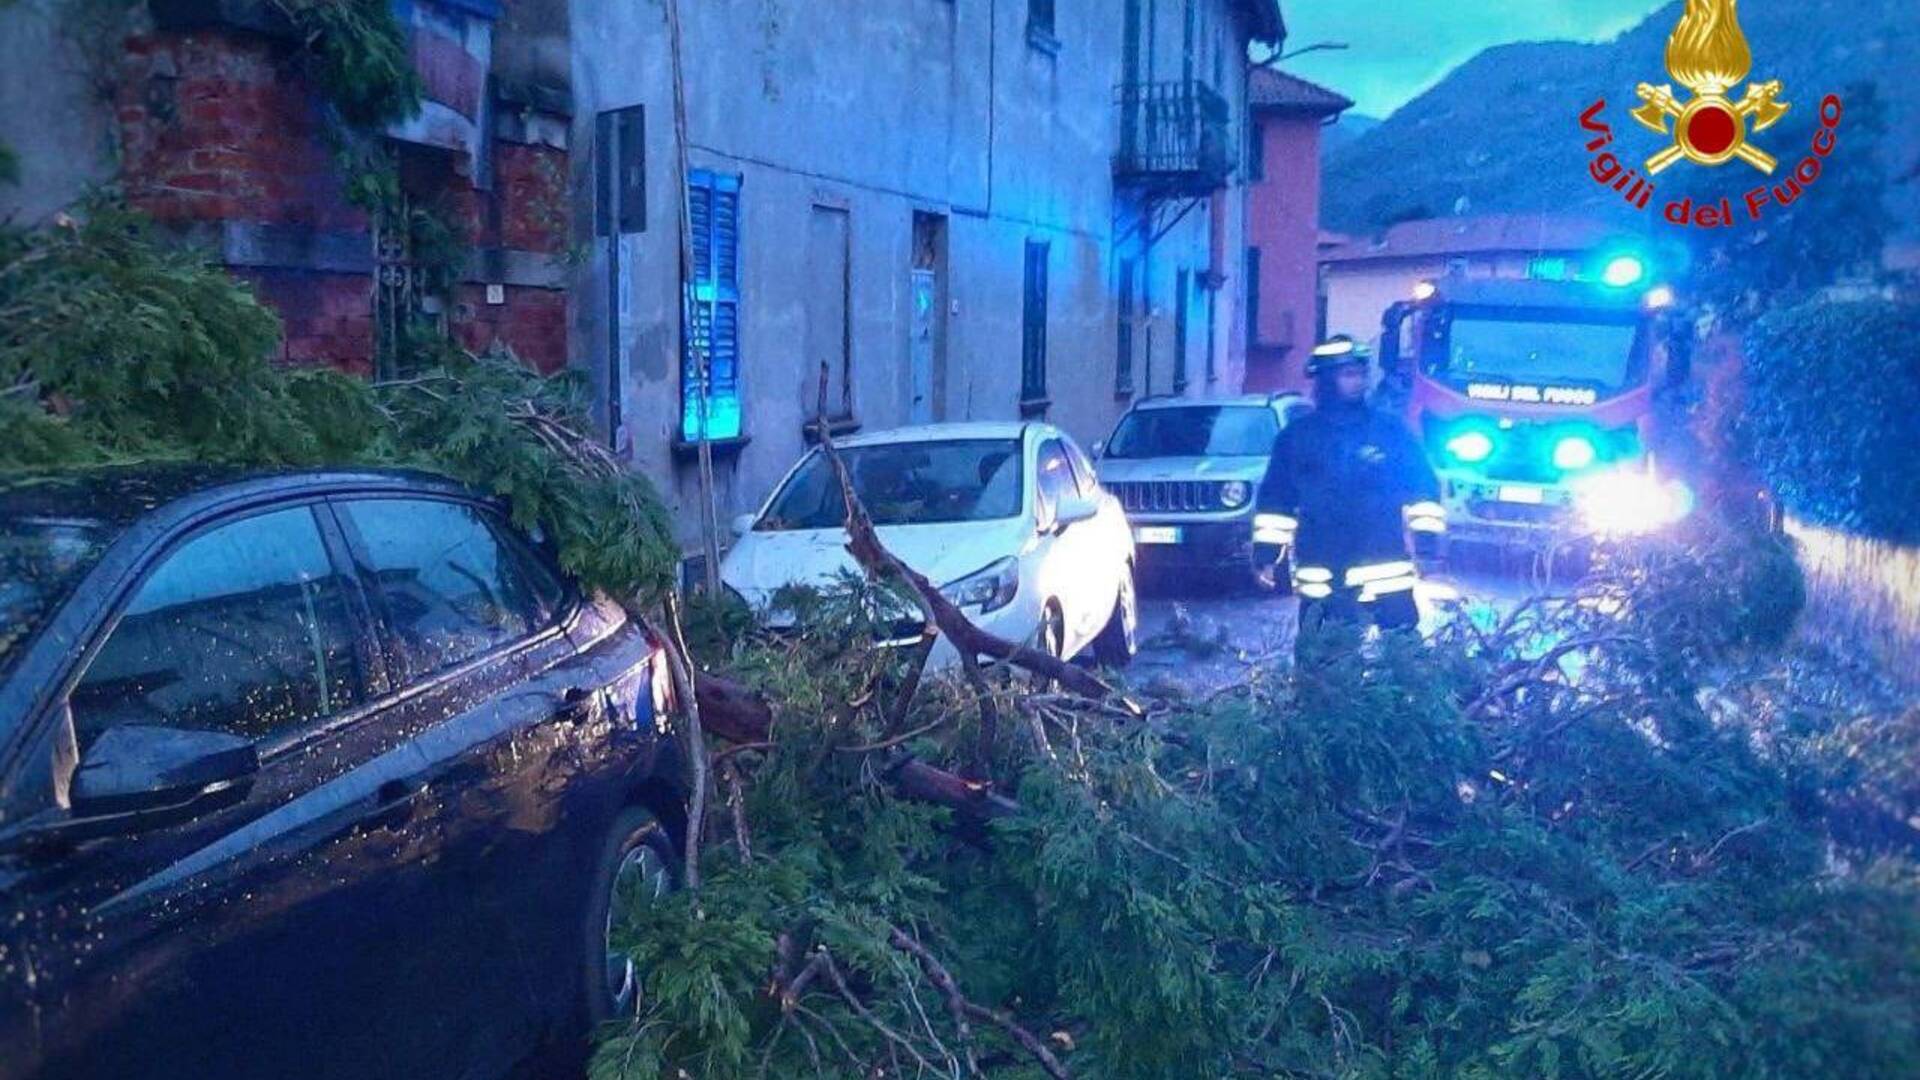 Maltempo a pasquetta: tutti i danni nel Varesotto e Lombardia